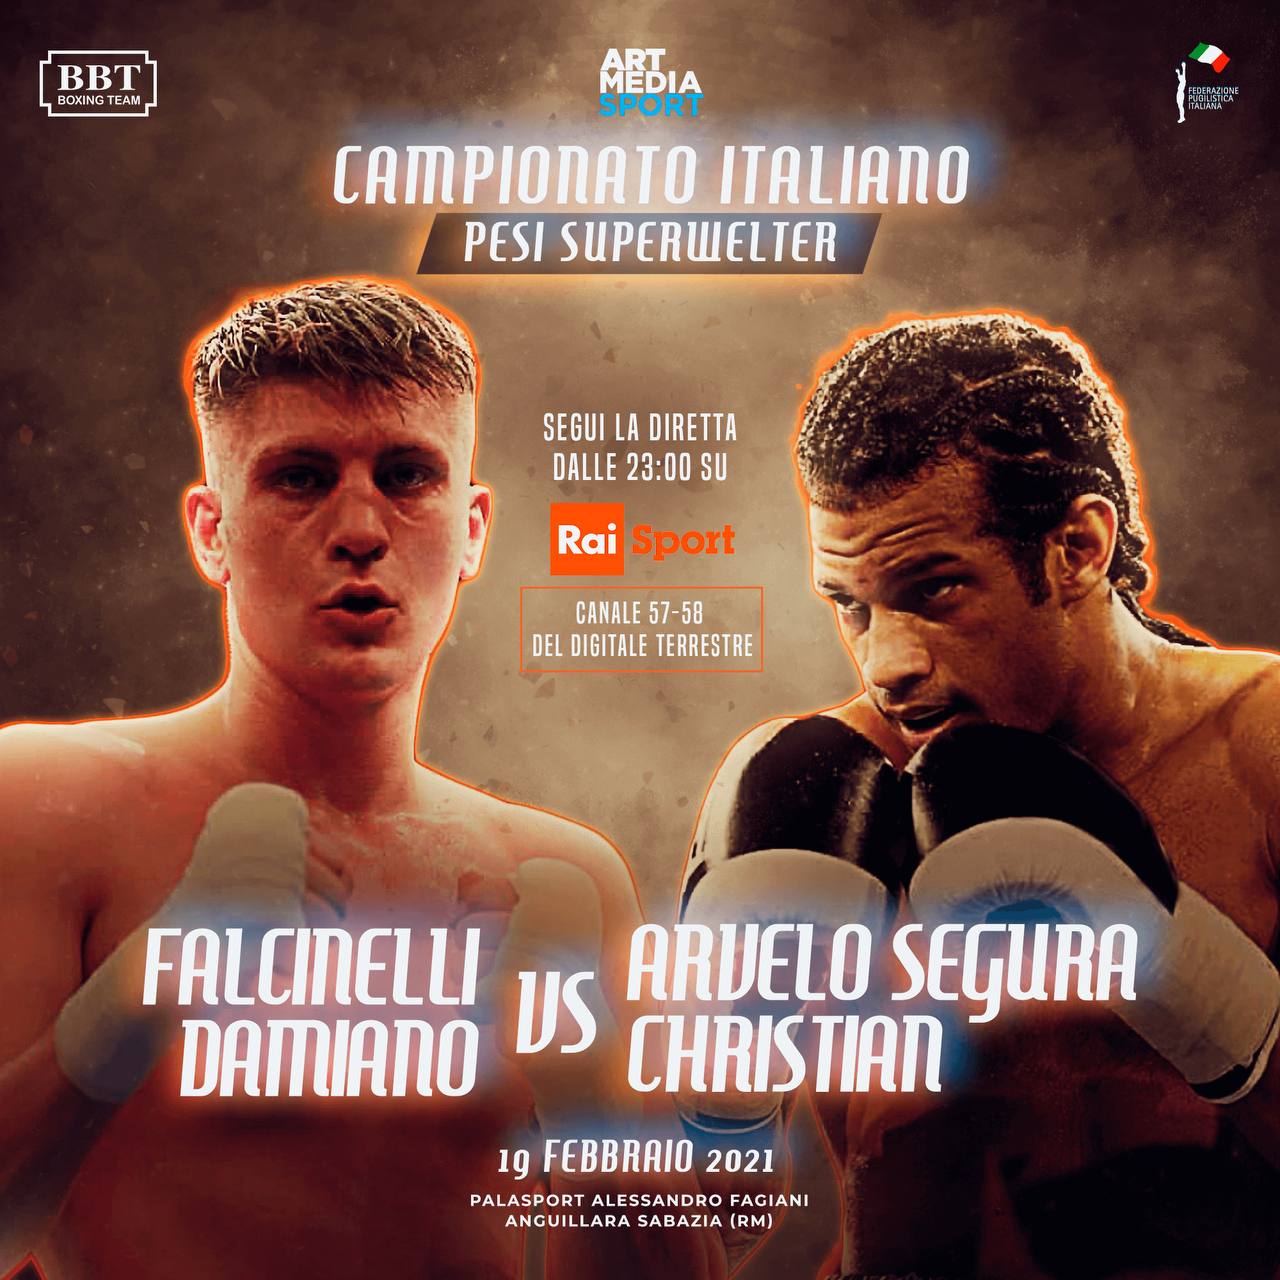 Il 19 Febbraio ad Anguillara Falcinelli vs Segura per la Cintura Italiana Superwelter - Diretta RaiSport H 23